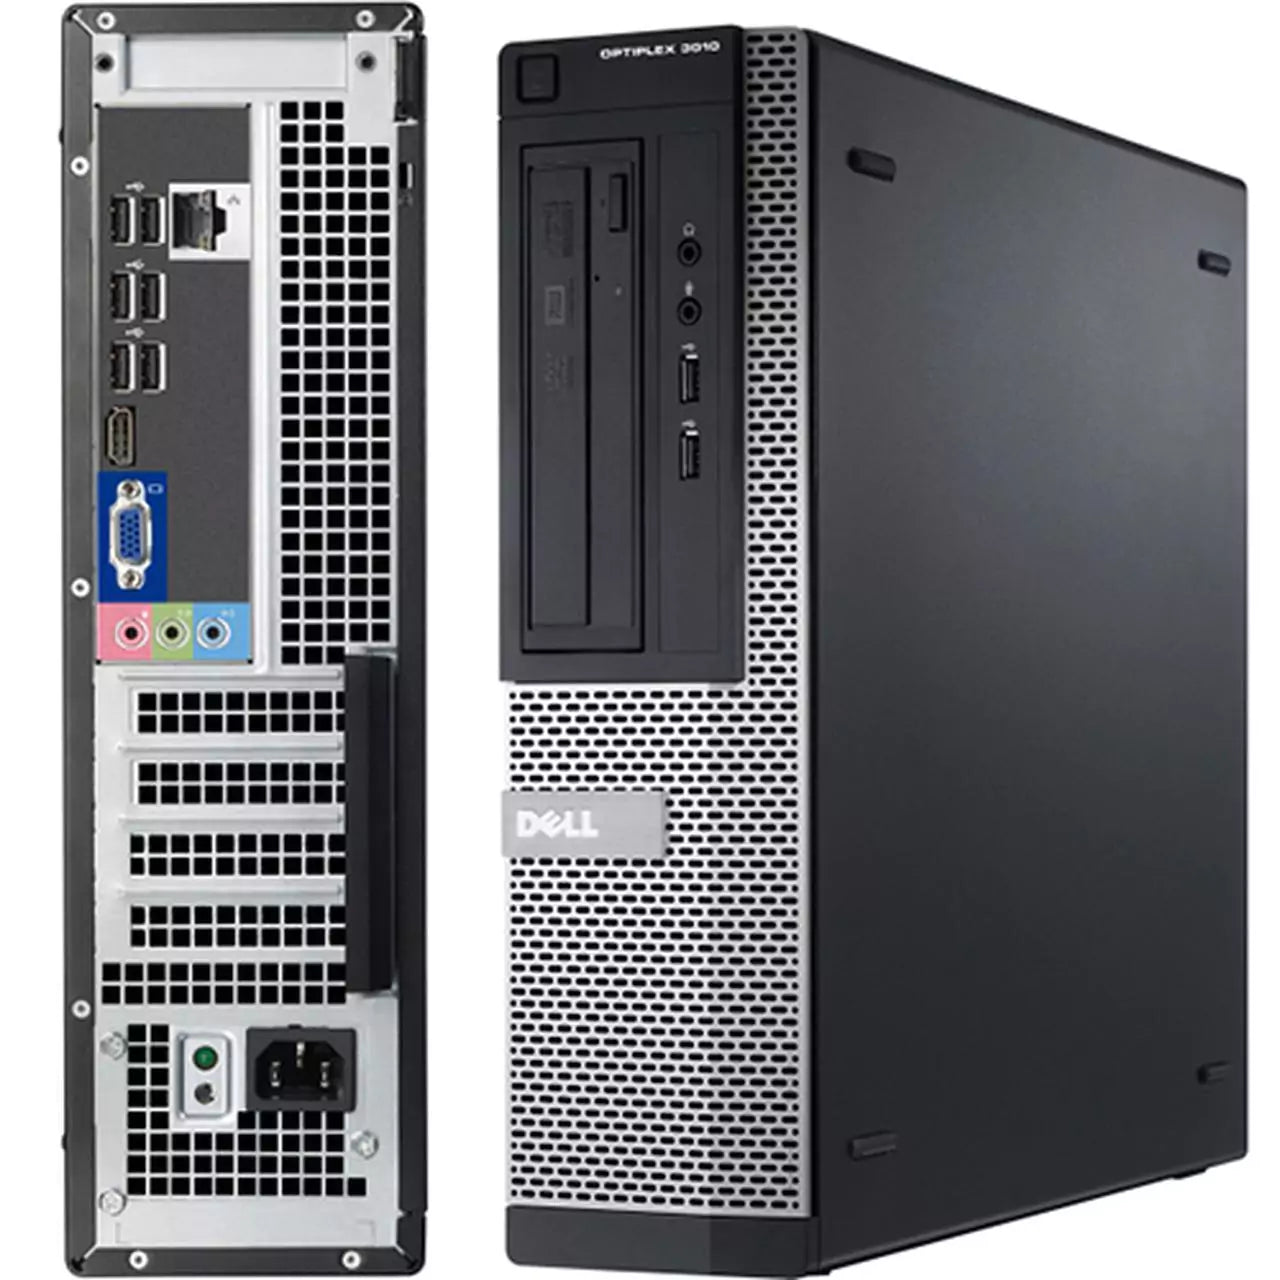 Dell Optiplex 3010 DT | Intel Core i5-3470 3.2Ghz | 8Gb Ram | SSD 256Gb | Windows 10 | Prestazioni ed aggiornabilità